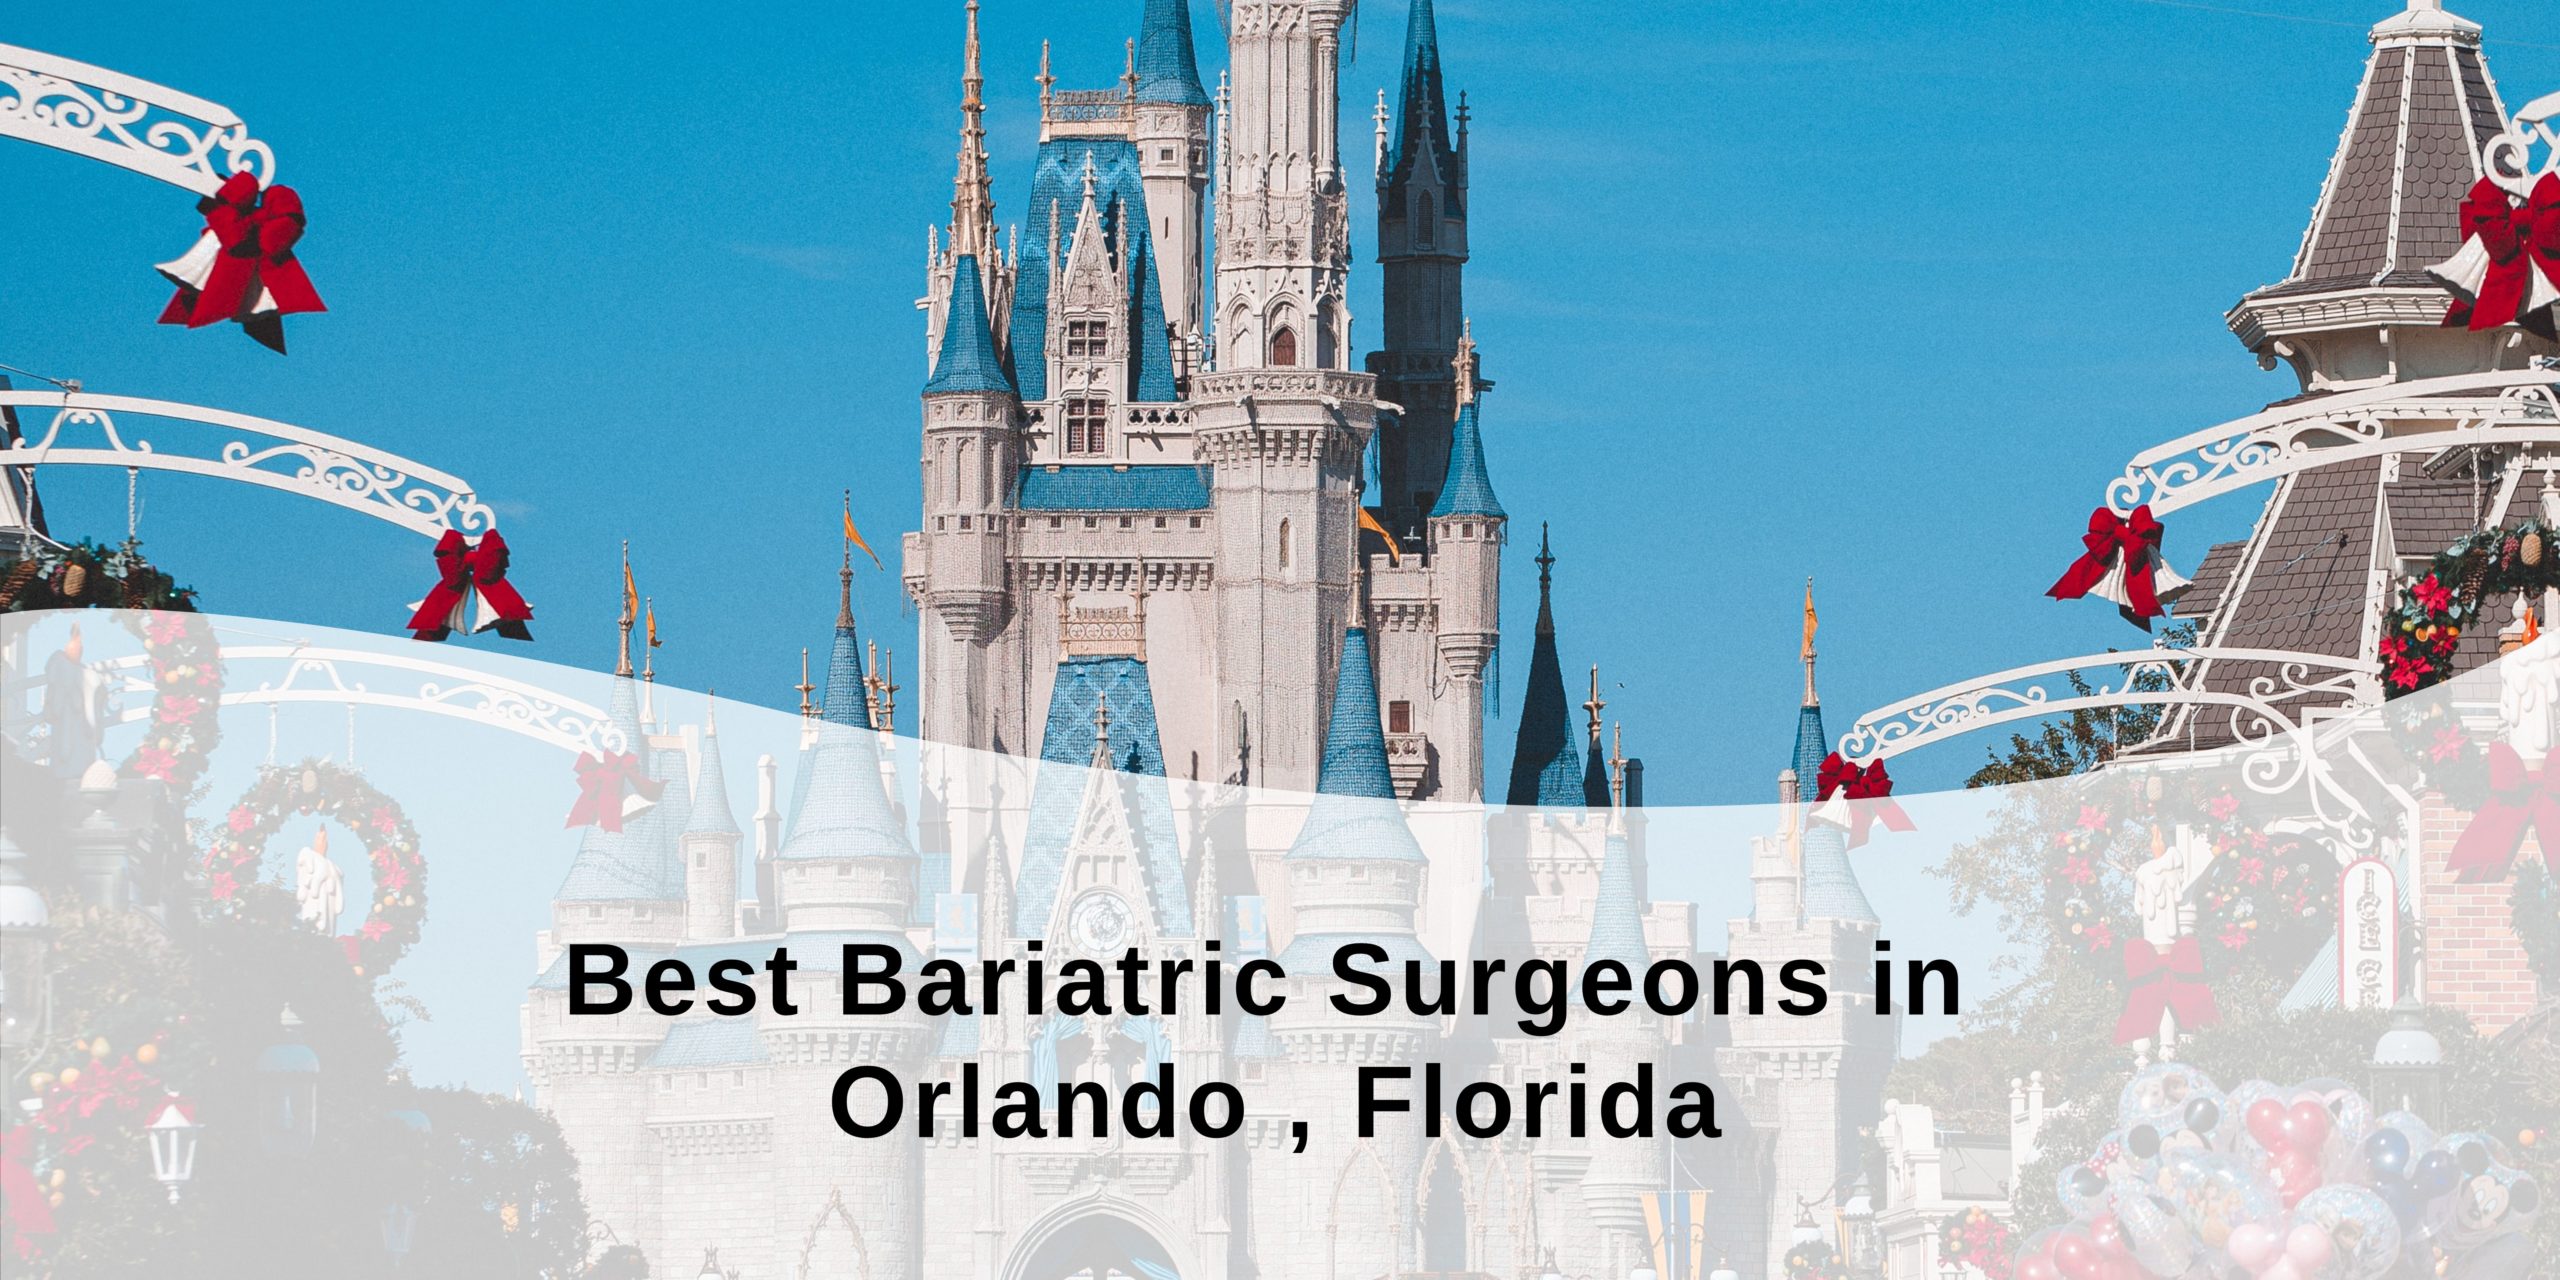 Best Bariatric Surgeons in Orlando, Florida